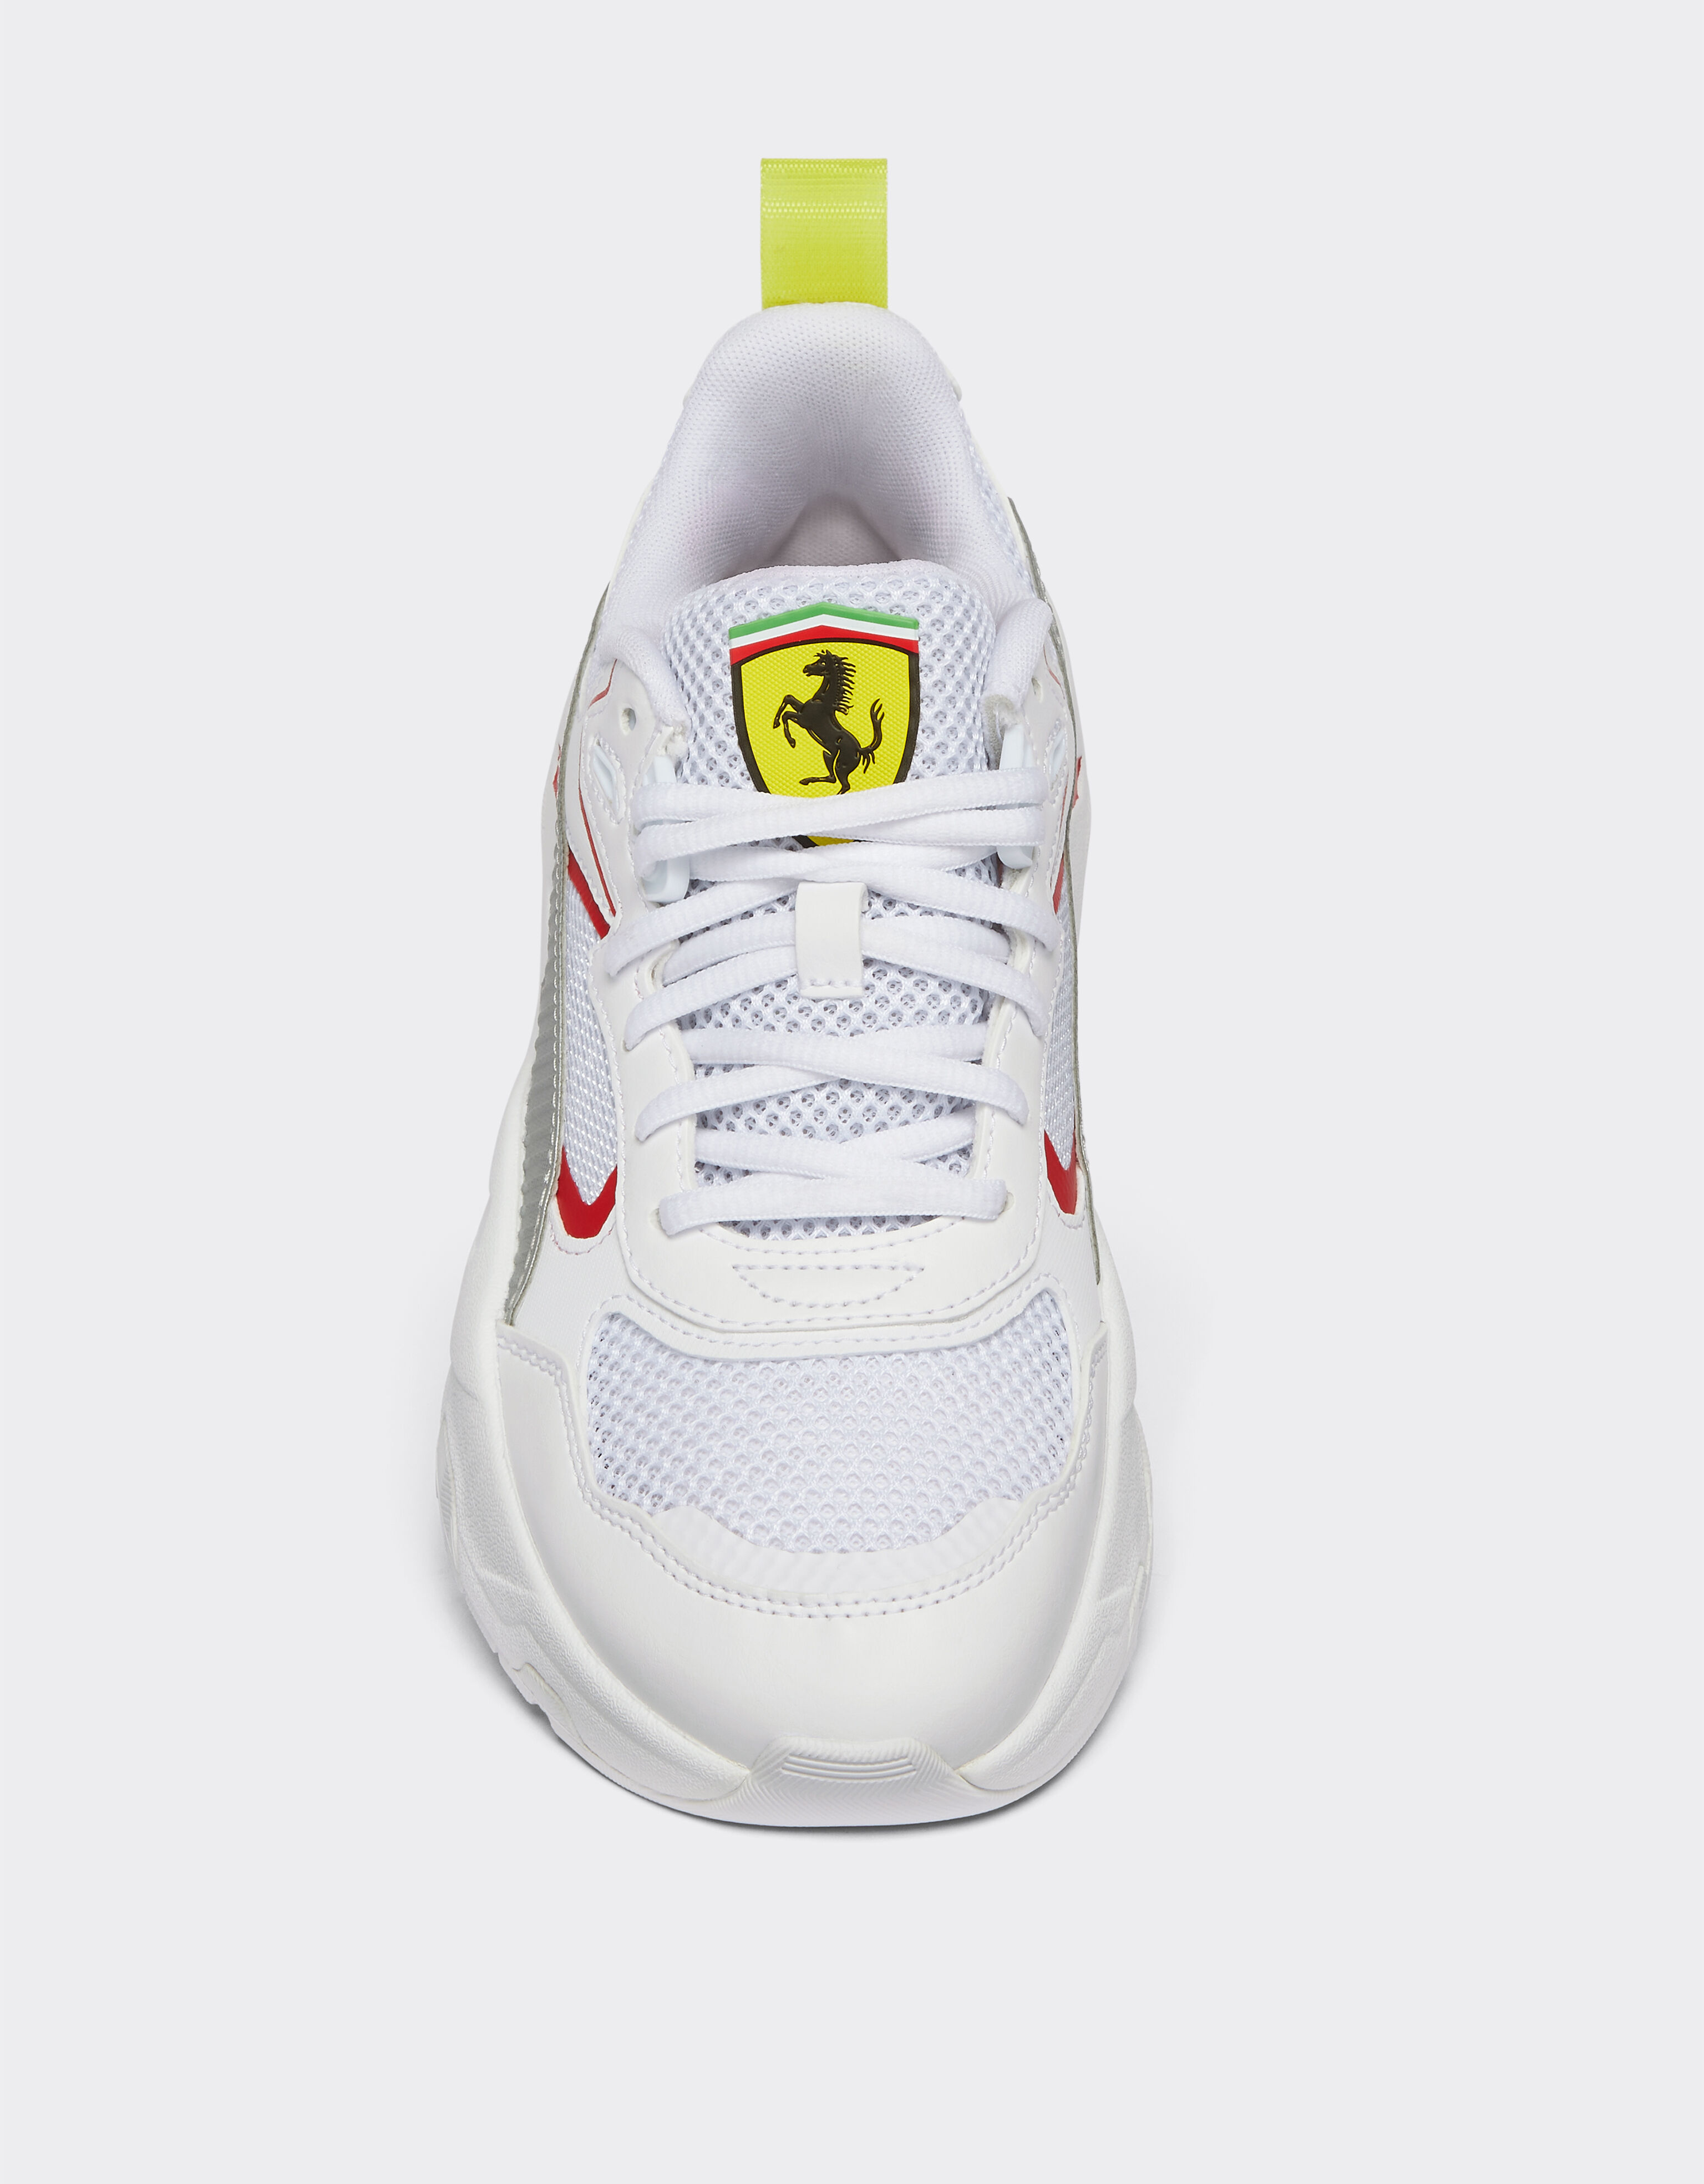 Ferrari Puma für Scuderia Ferrari Trinity Schuhe Optisch Weiß F1126f